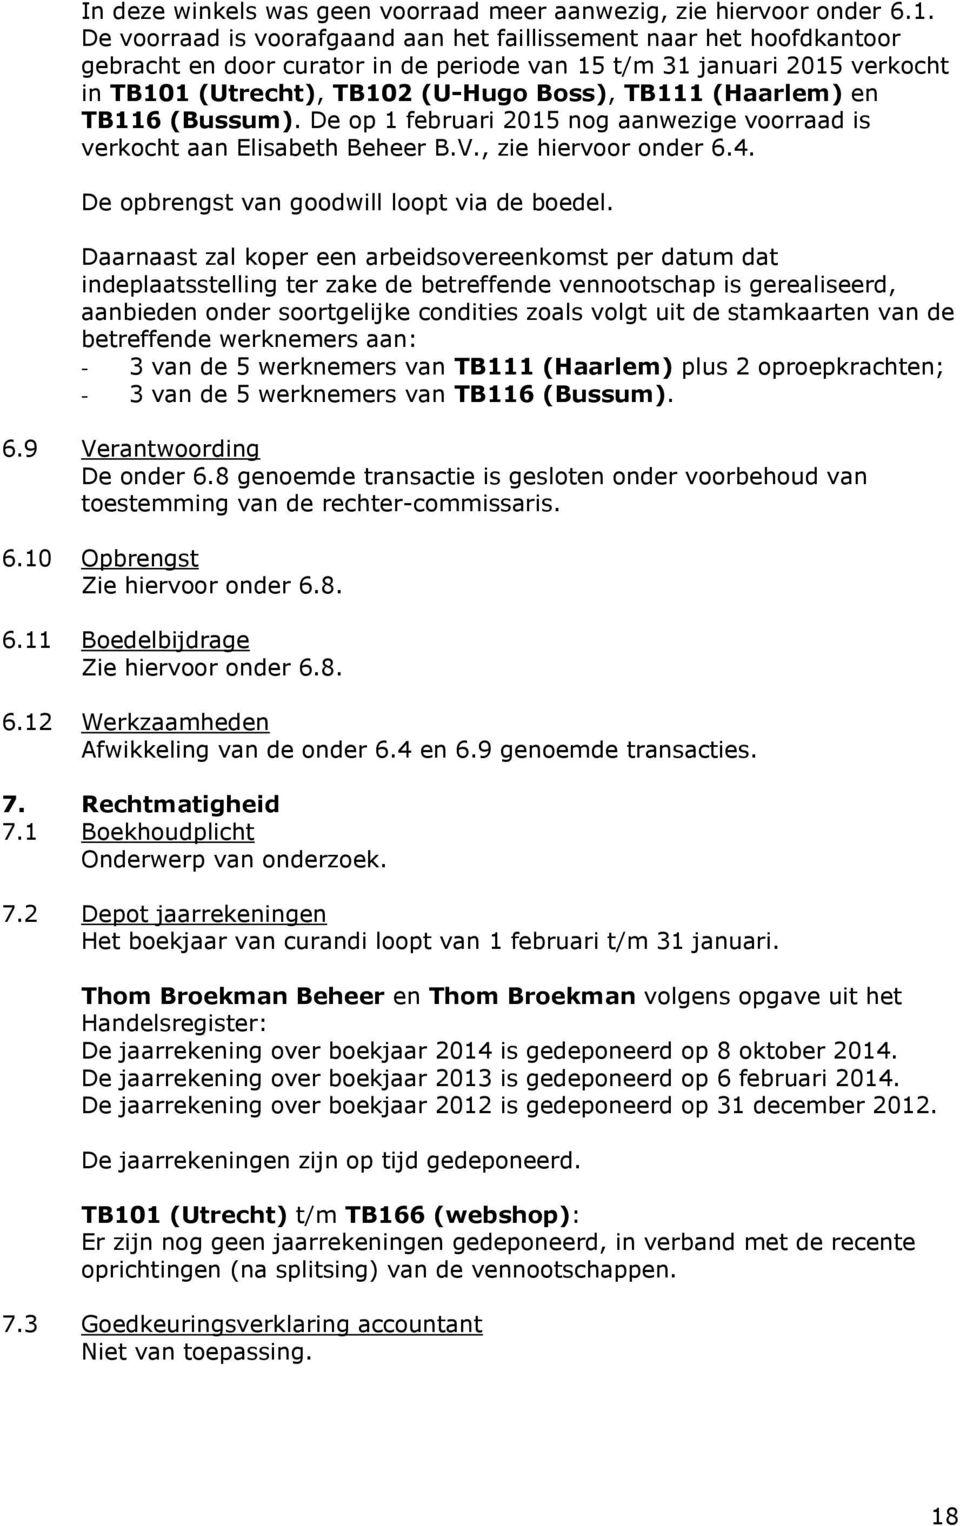 (Haarlem) en TB116 (Bussum). De op 1 februari 2015 nog aanwezige voorraad is verkocht aan Elisabeth Beheer B.V., zie hiervoor onder 6.4. De opbrengst van goodwill loopt via de boedel.